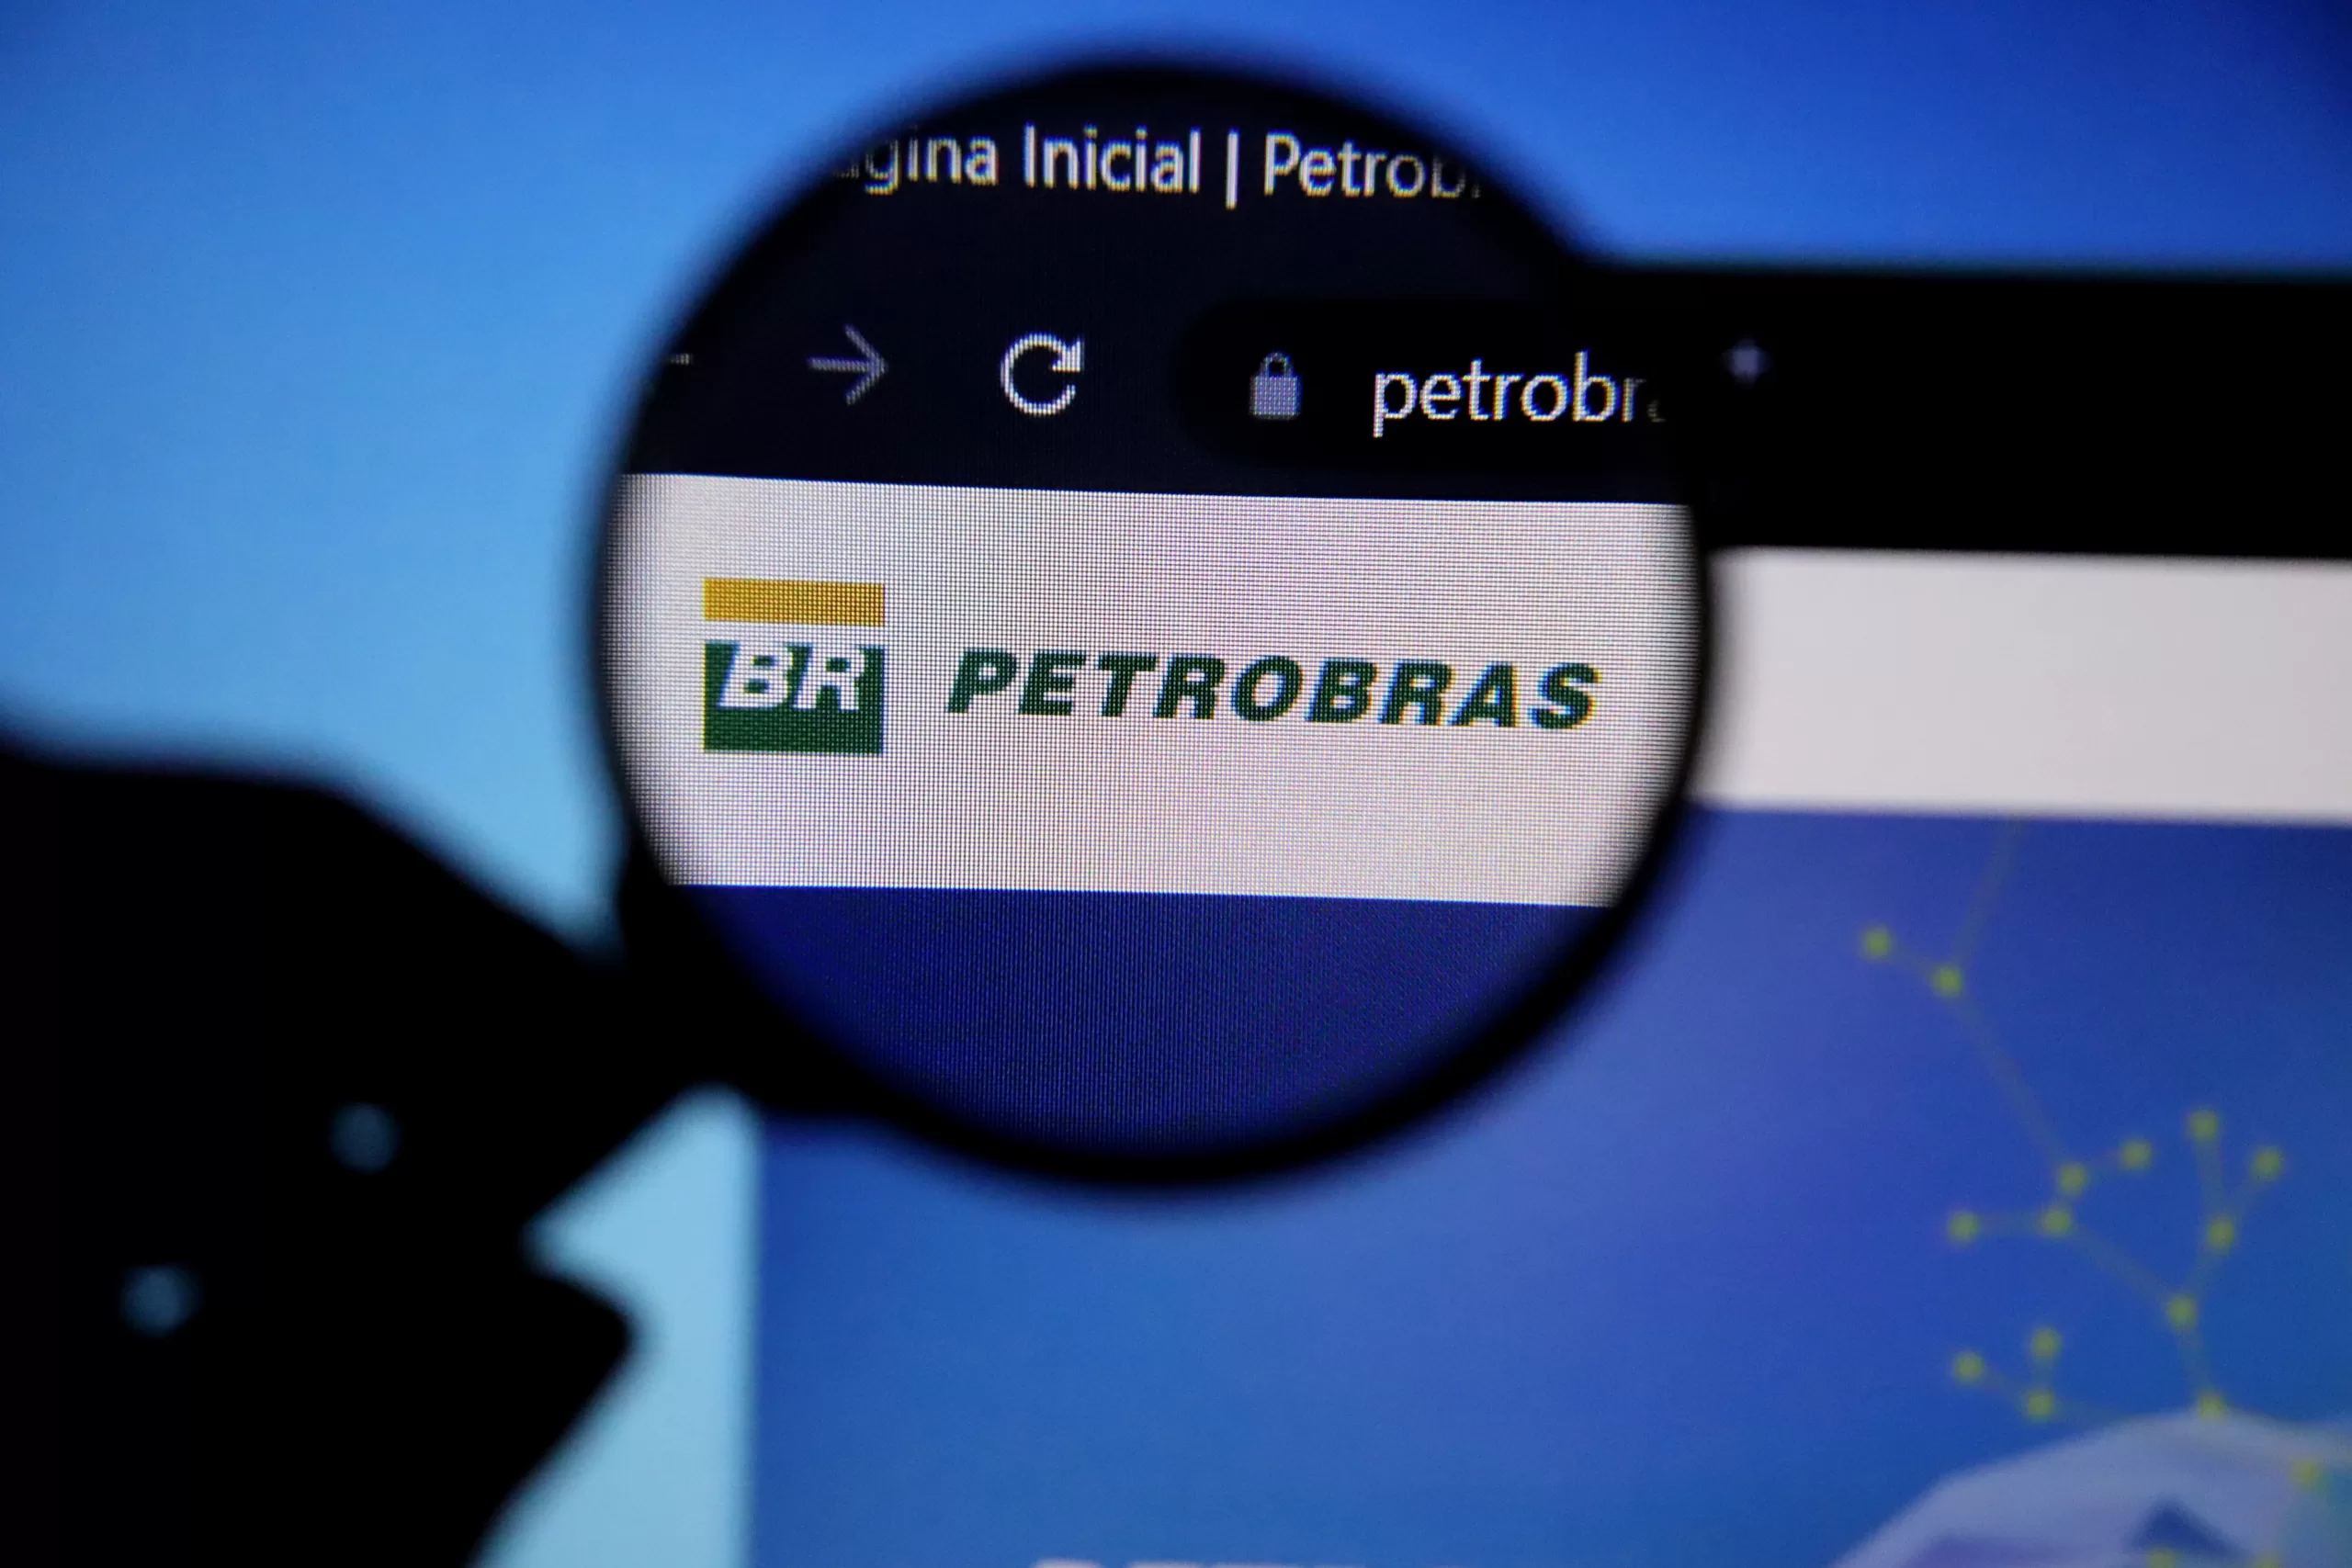 Mercado hoje: expectativa do dia fica com dividendos da Petrobras (PETR3; PETR4), lucro da Eletrobras (ELET3;ELET6) e preço de ações do GPA (PCAR3) em oferta